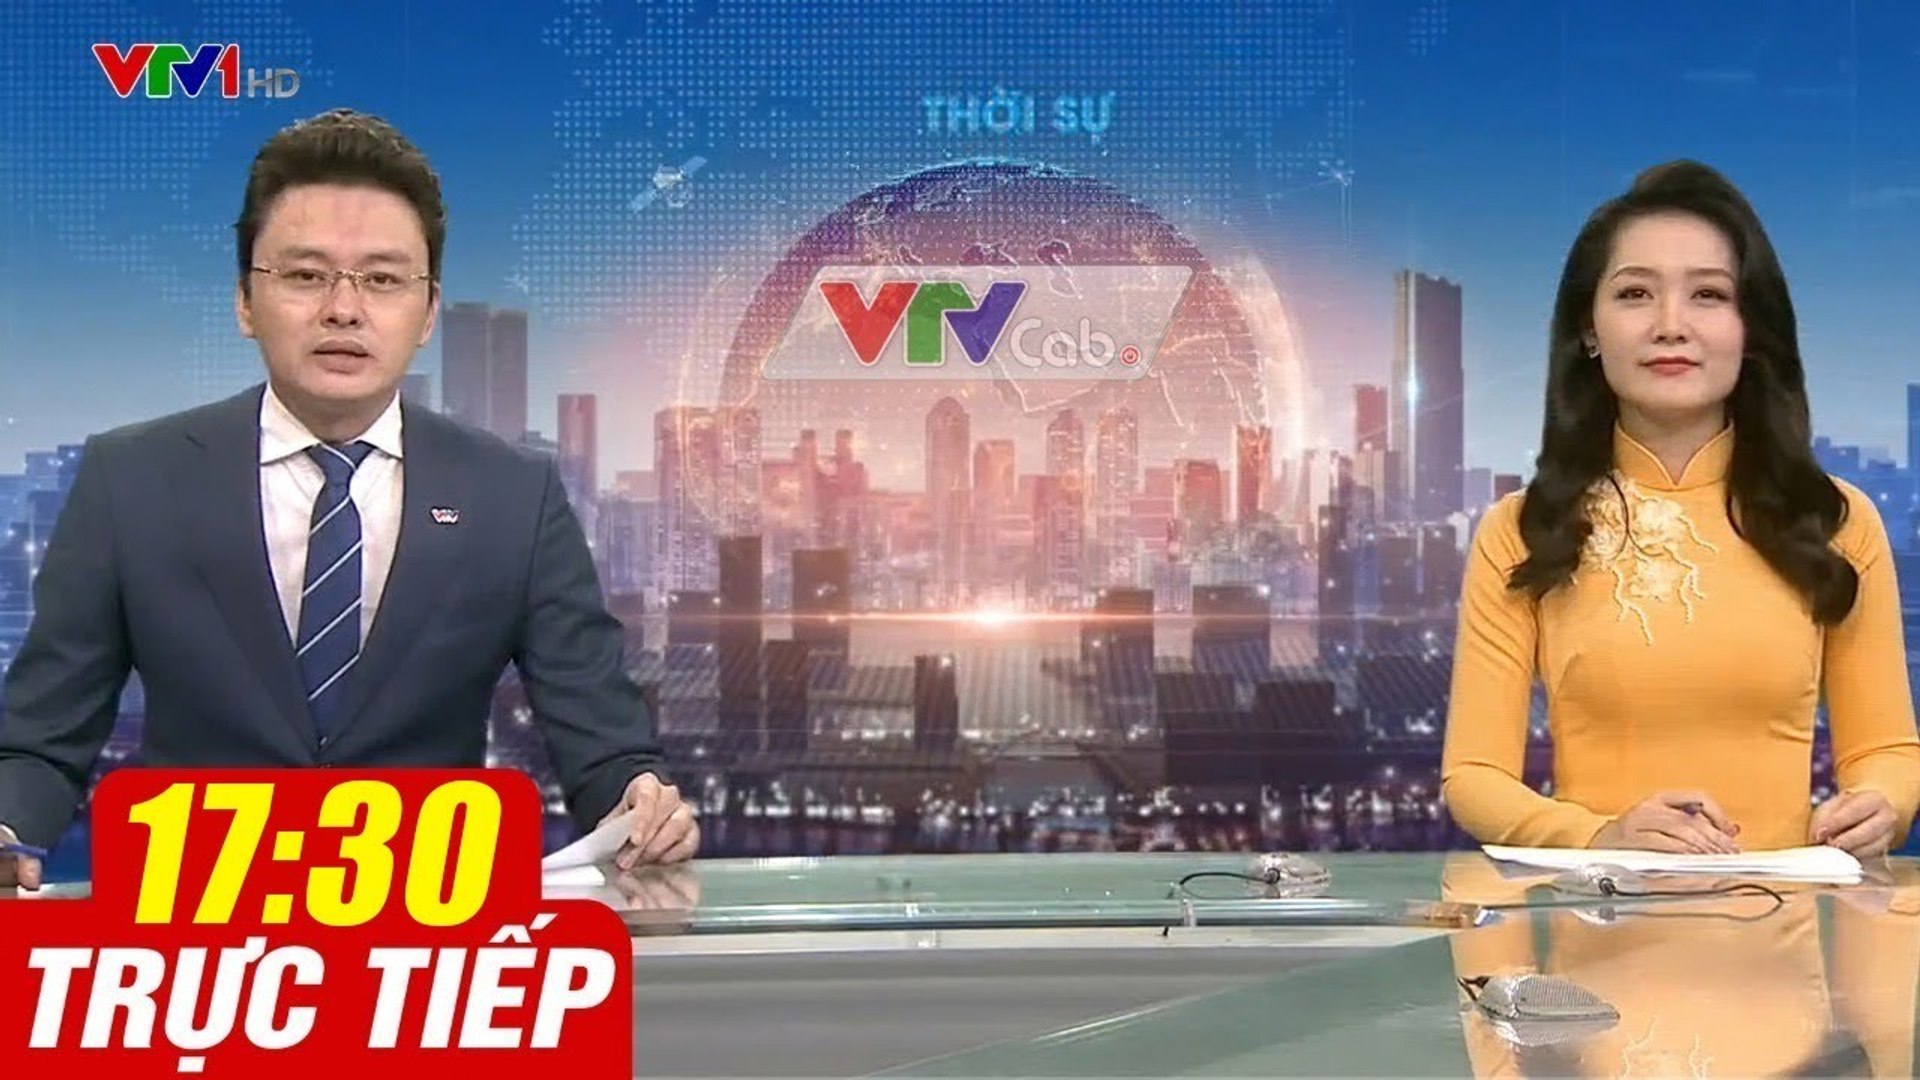 Trực Tiếp VIỆT NAM HÔM NAY 17h30 ngày 21.09.2020  Tin tức thời sự VTV1 mới nhất hôm nay